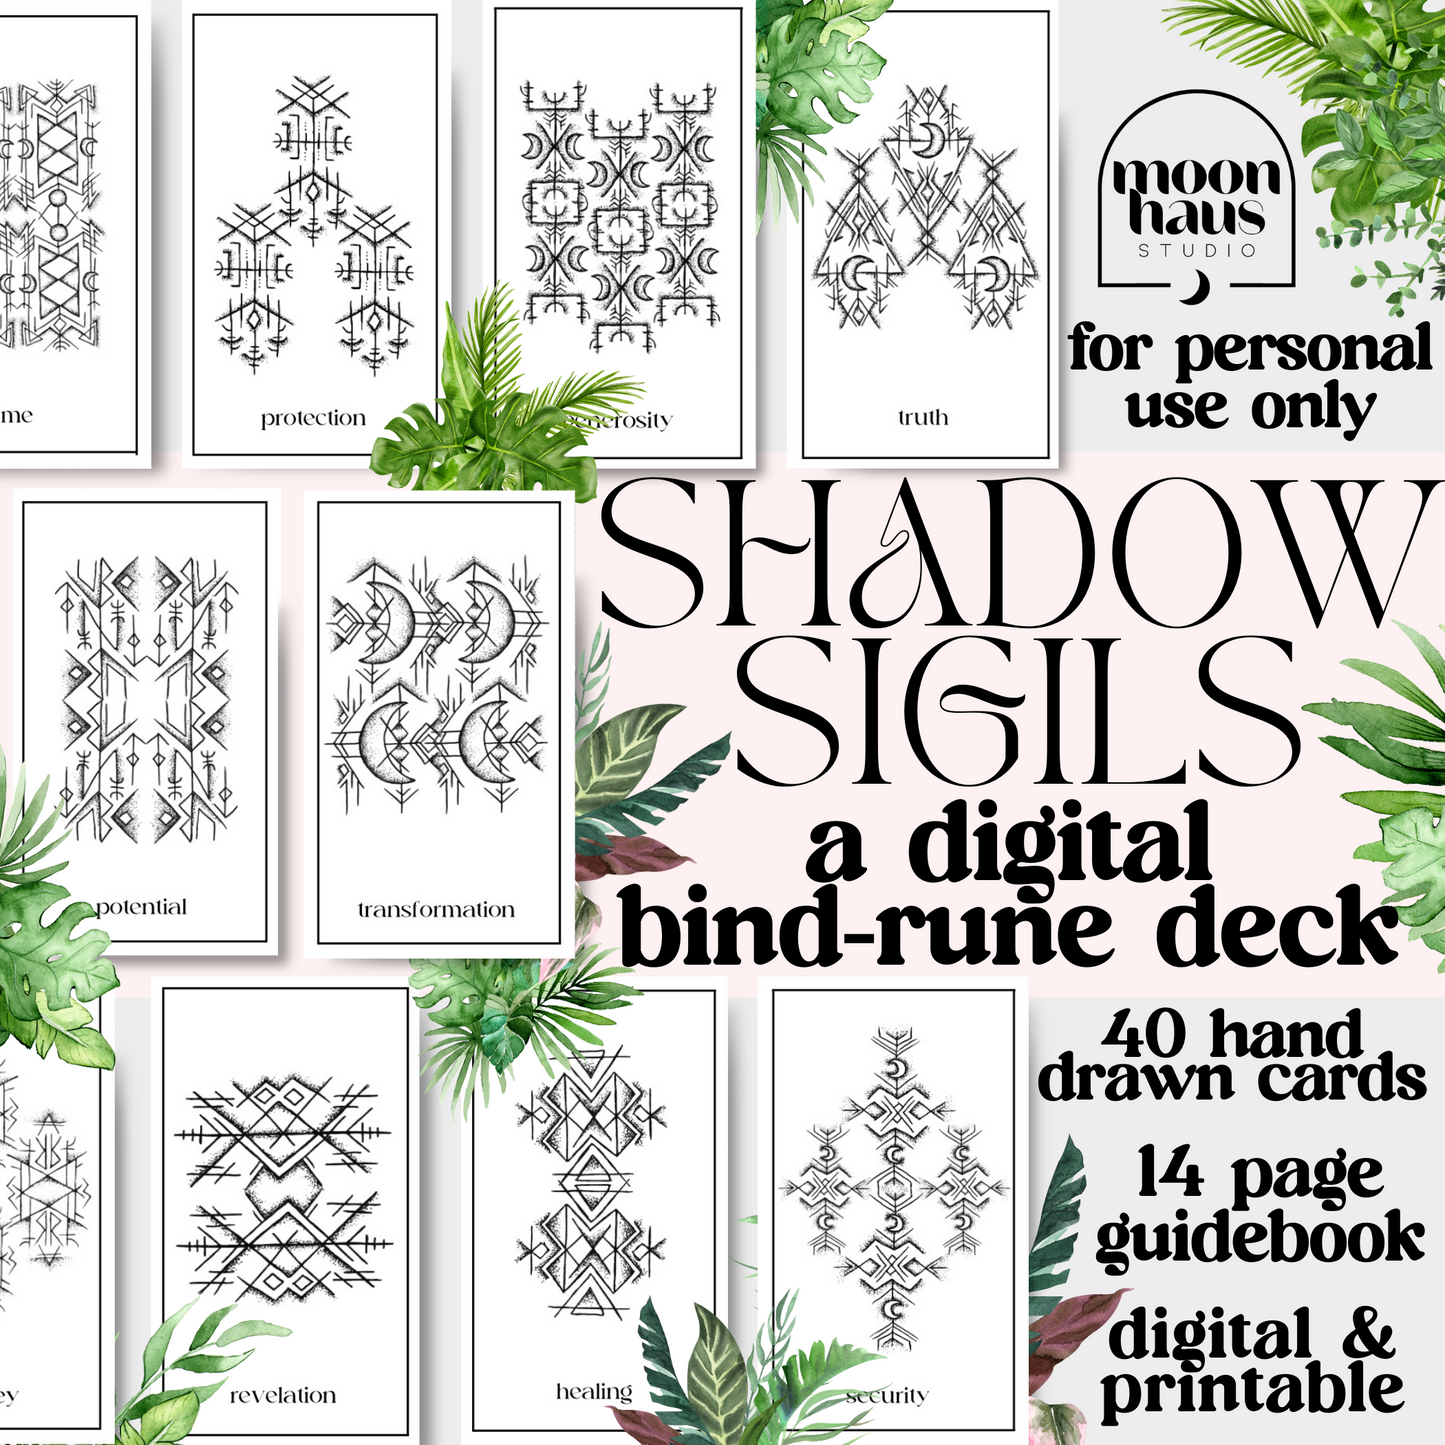 digital oracle rune deck: Shadow Sigils, printable PDF deck with guidebook, hand drawn